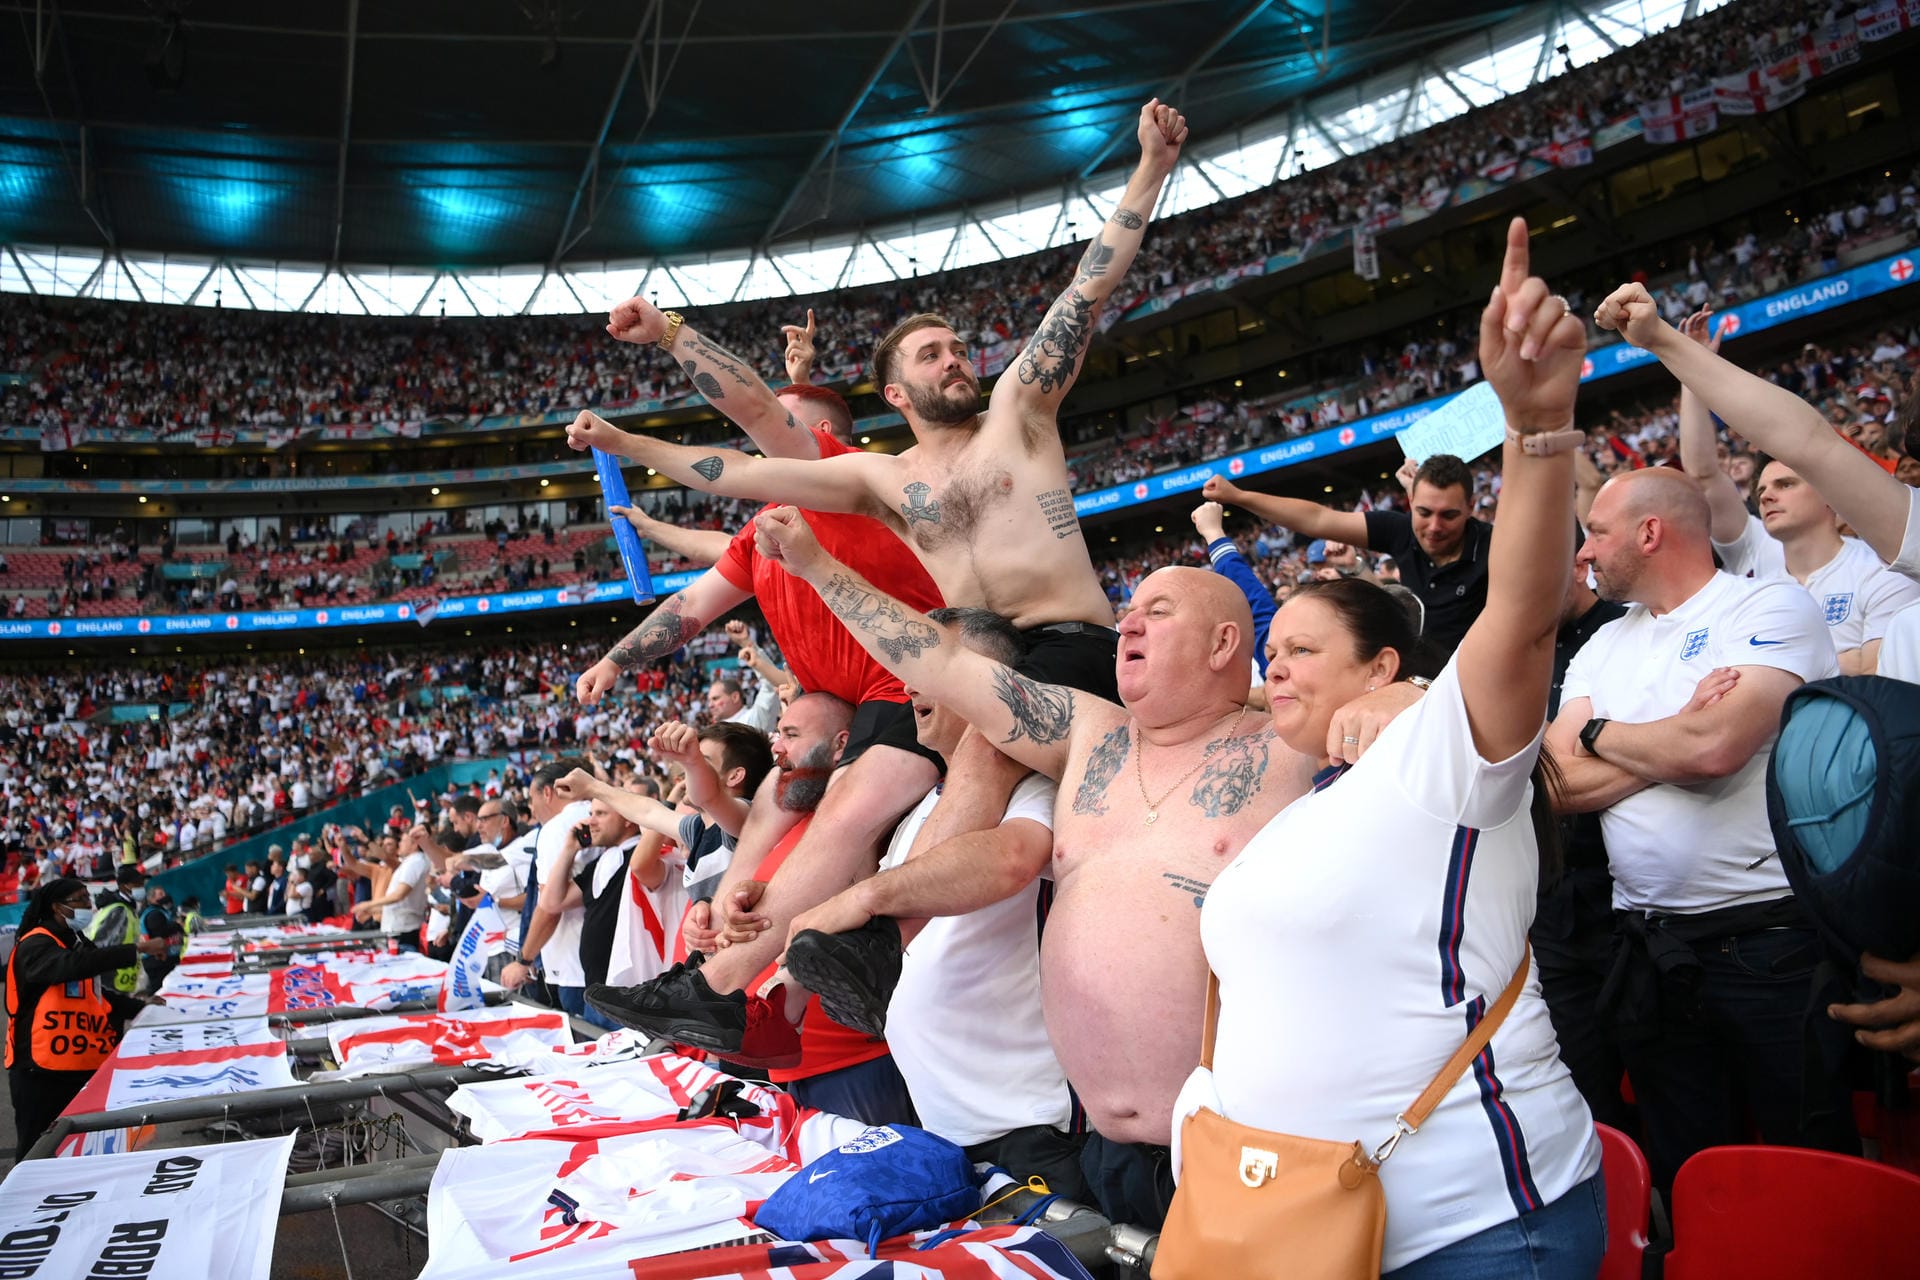 Die englischen Fans waren in der klaren Überzahl im Wembley – und zum Teil auch wieder sehr freizügig unterwegs.